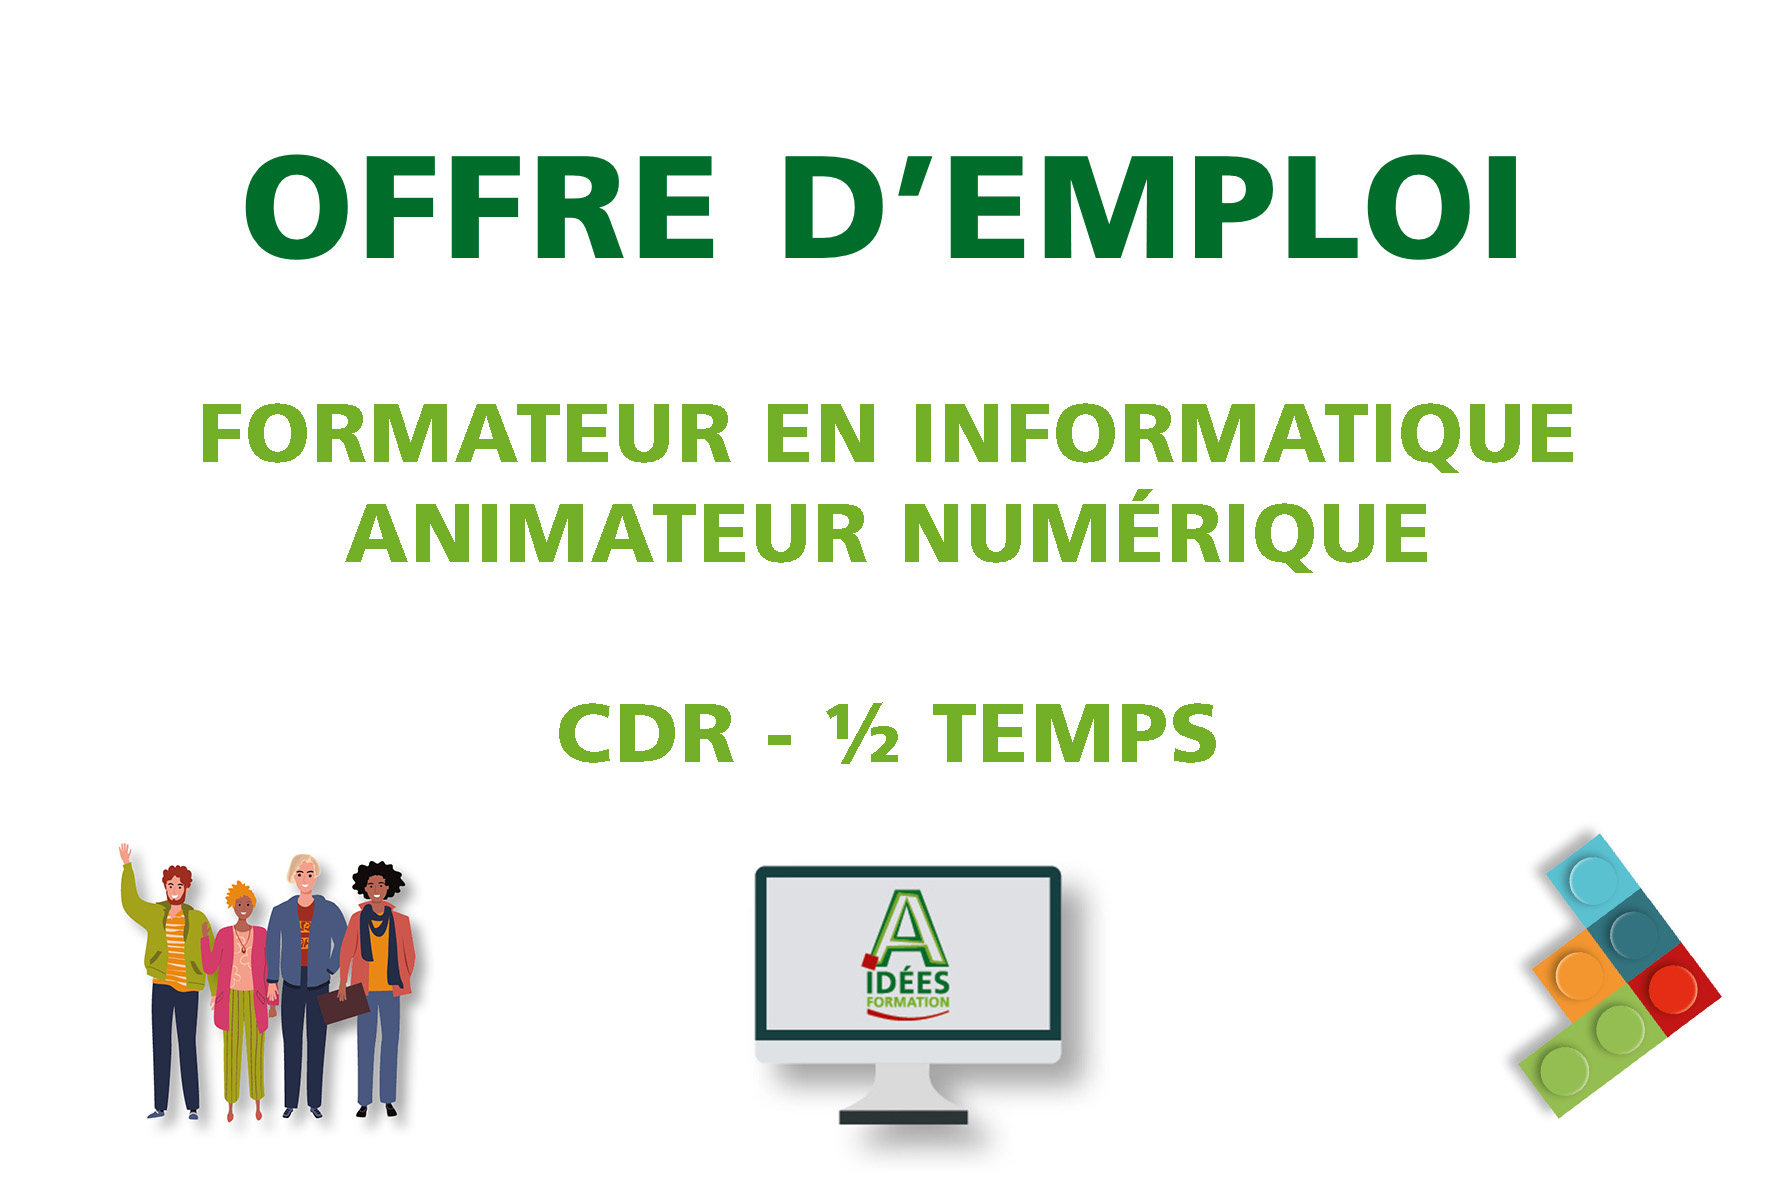 OFFRE D'EMPLOI : Formateur en Informatique (CDR)